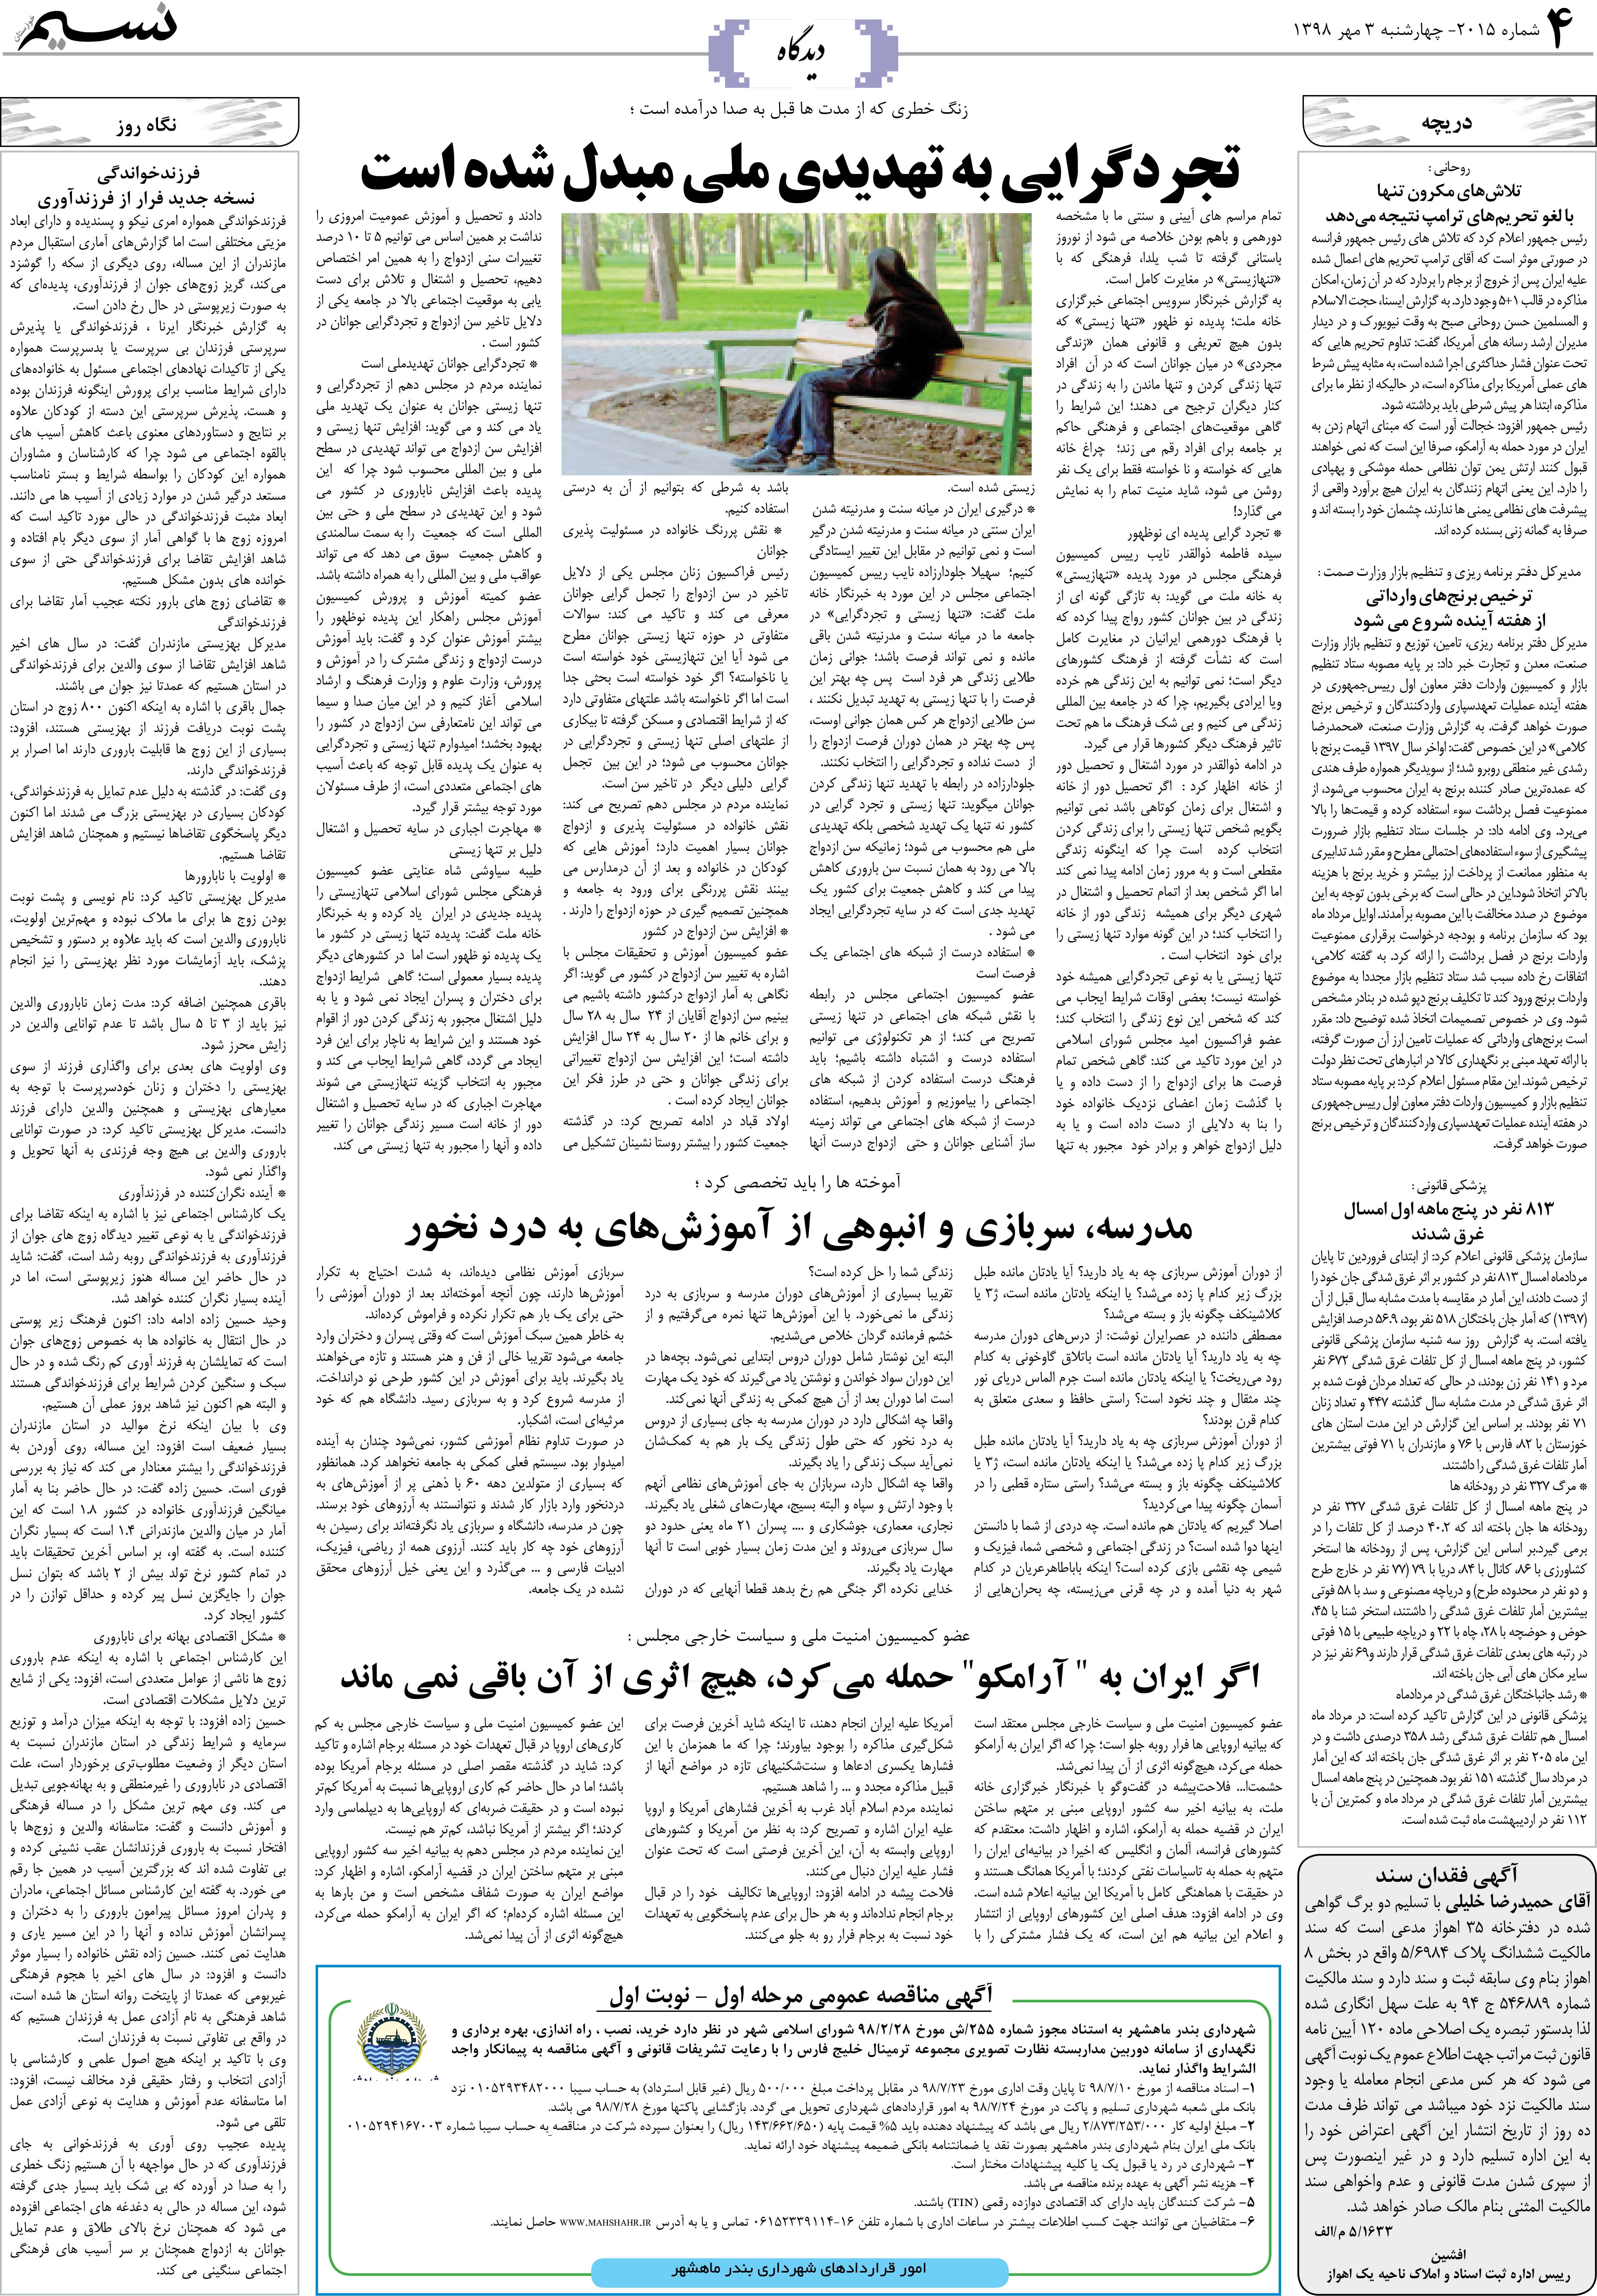 صفحه دیدگاه روزنامه نسیم شماره 2015